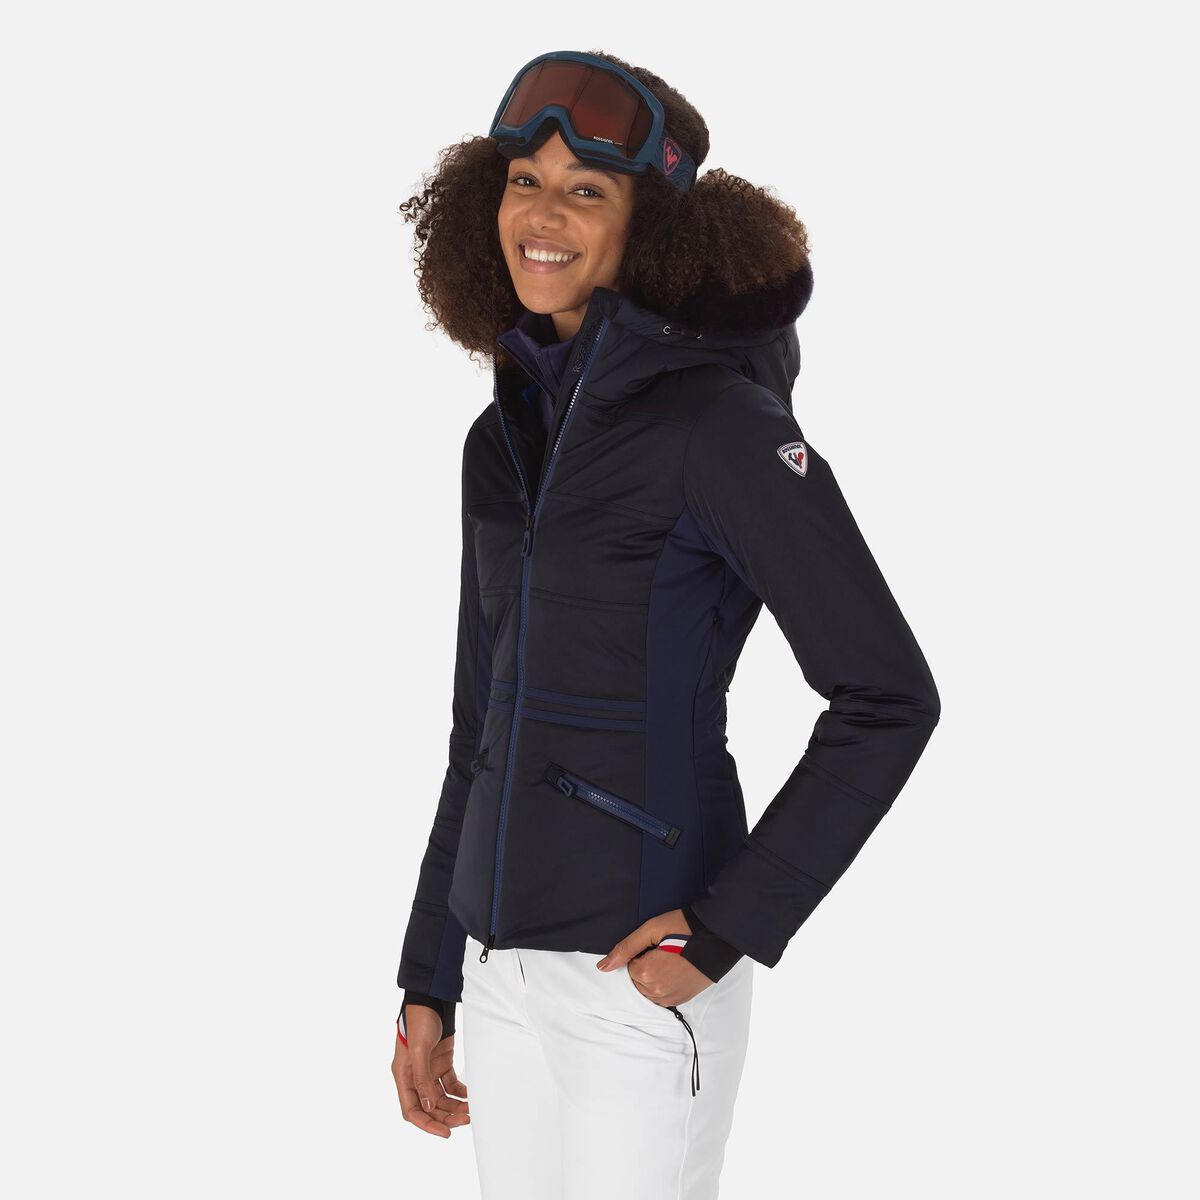 Rossignol Women's ROC Ski Jacket Blue